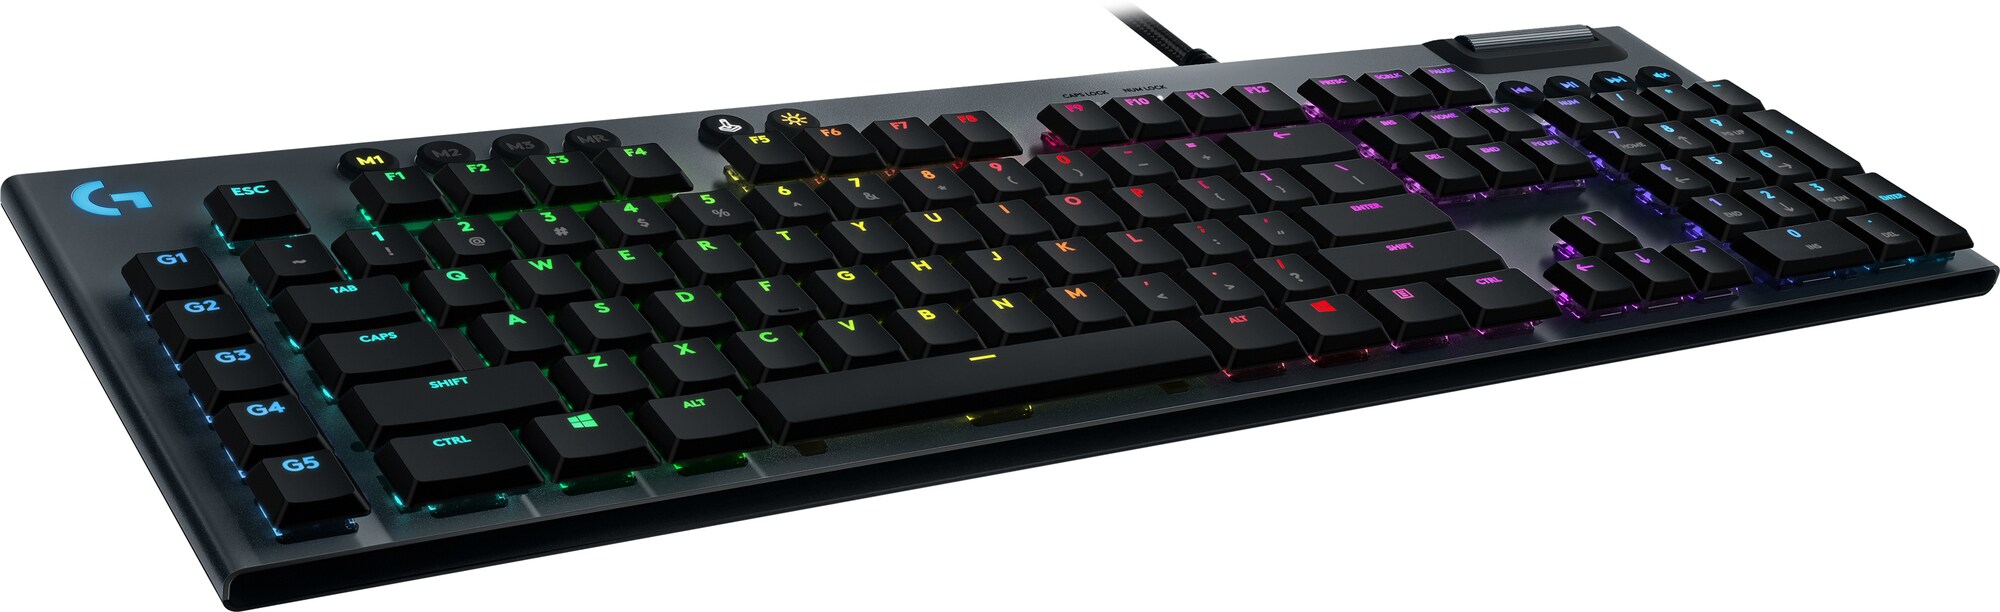 Logitech G815 gamingtastatur (GL Tactile-brytere) - Gamingtastatur - Elkjøp